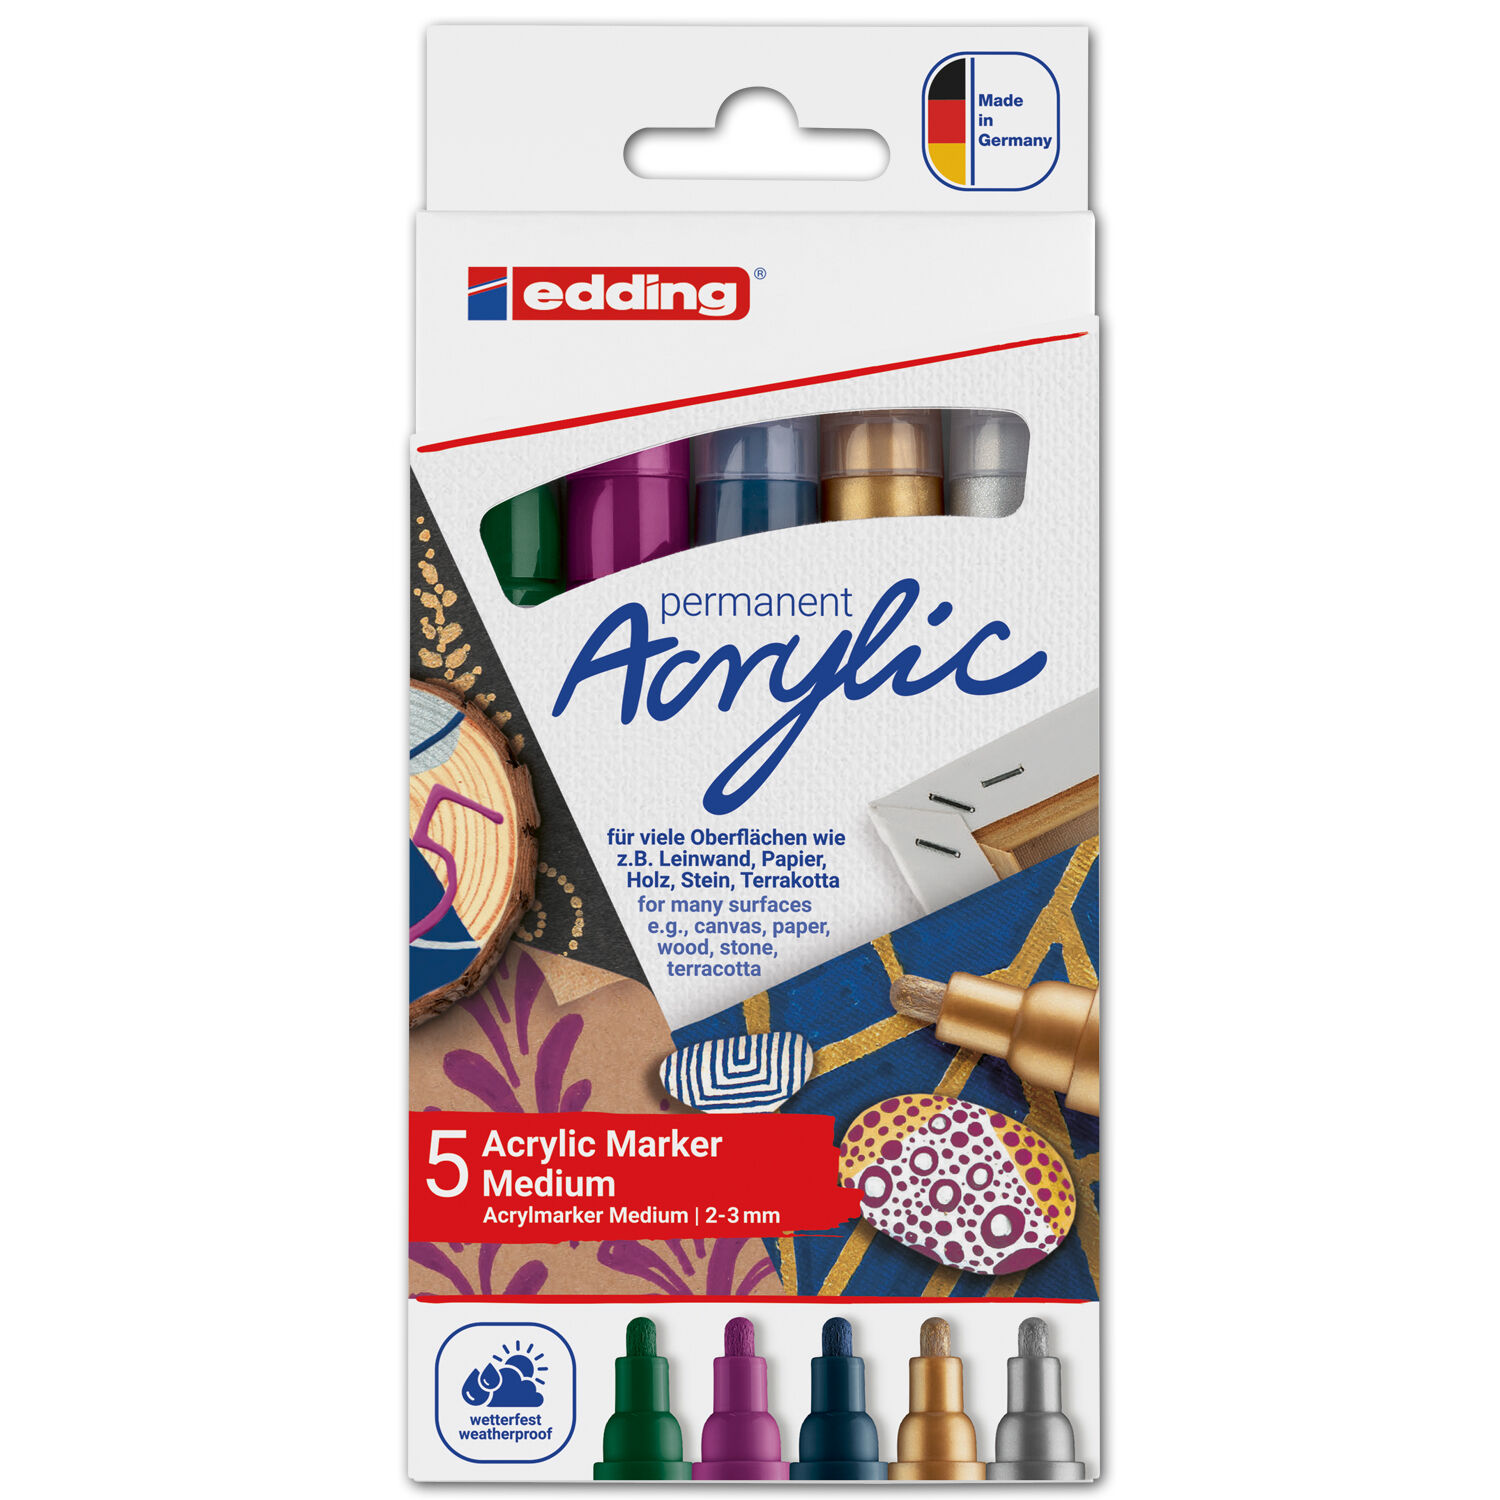 NEU Edding 5100 Acrylmarker-Acrylstifte-Set in den Farben grn, violett, blau, silber, gold, Rundspitze 2-3 mm, 5er-Set-Festlich